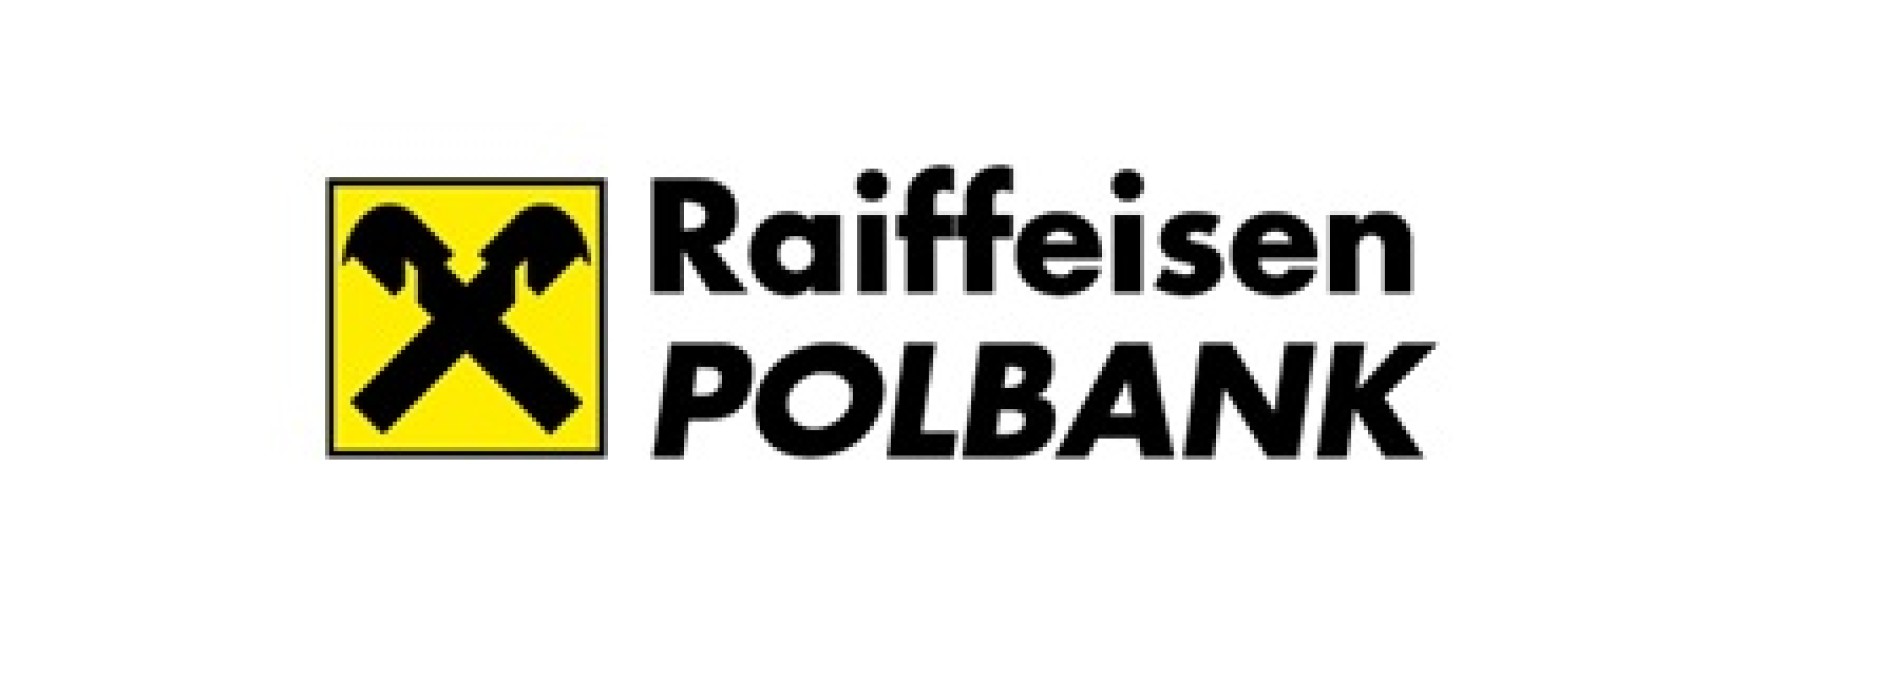 Raiffeisen Polbank osiągnął w ciągu trzech kwartałów 172 mln zł zysku nettoAUD/USD – czy wsparcie zostanie złamane